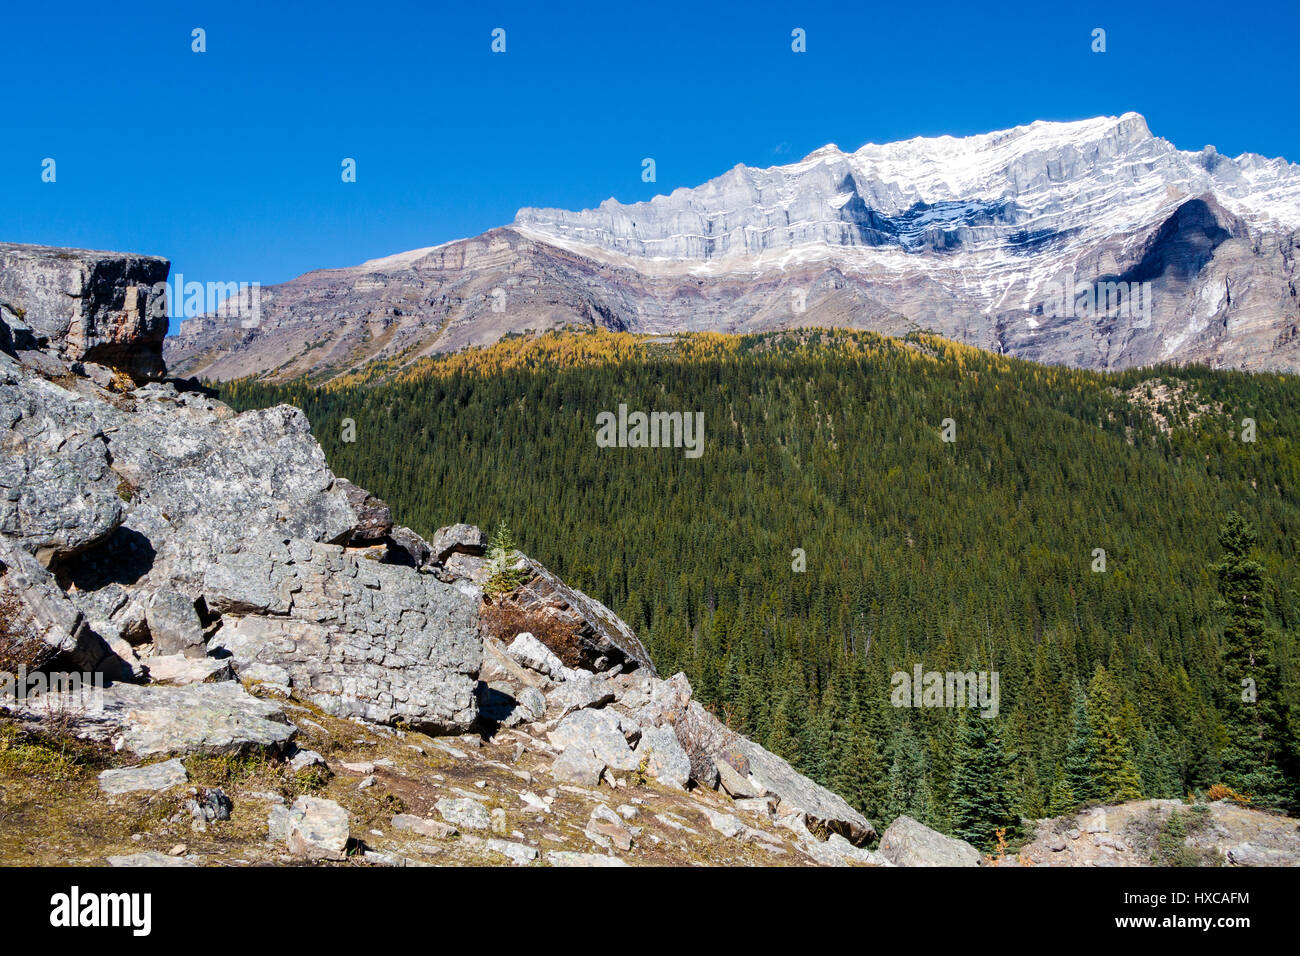 Ein Gebiet das Tal der zehn Gipfel am Moraine Lake, Banff Nationalpark, Alberta, Kanada. Stockfoto